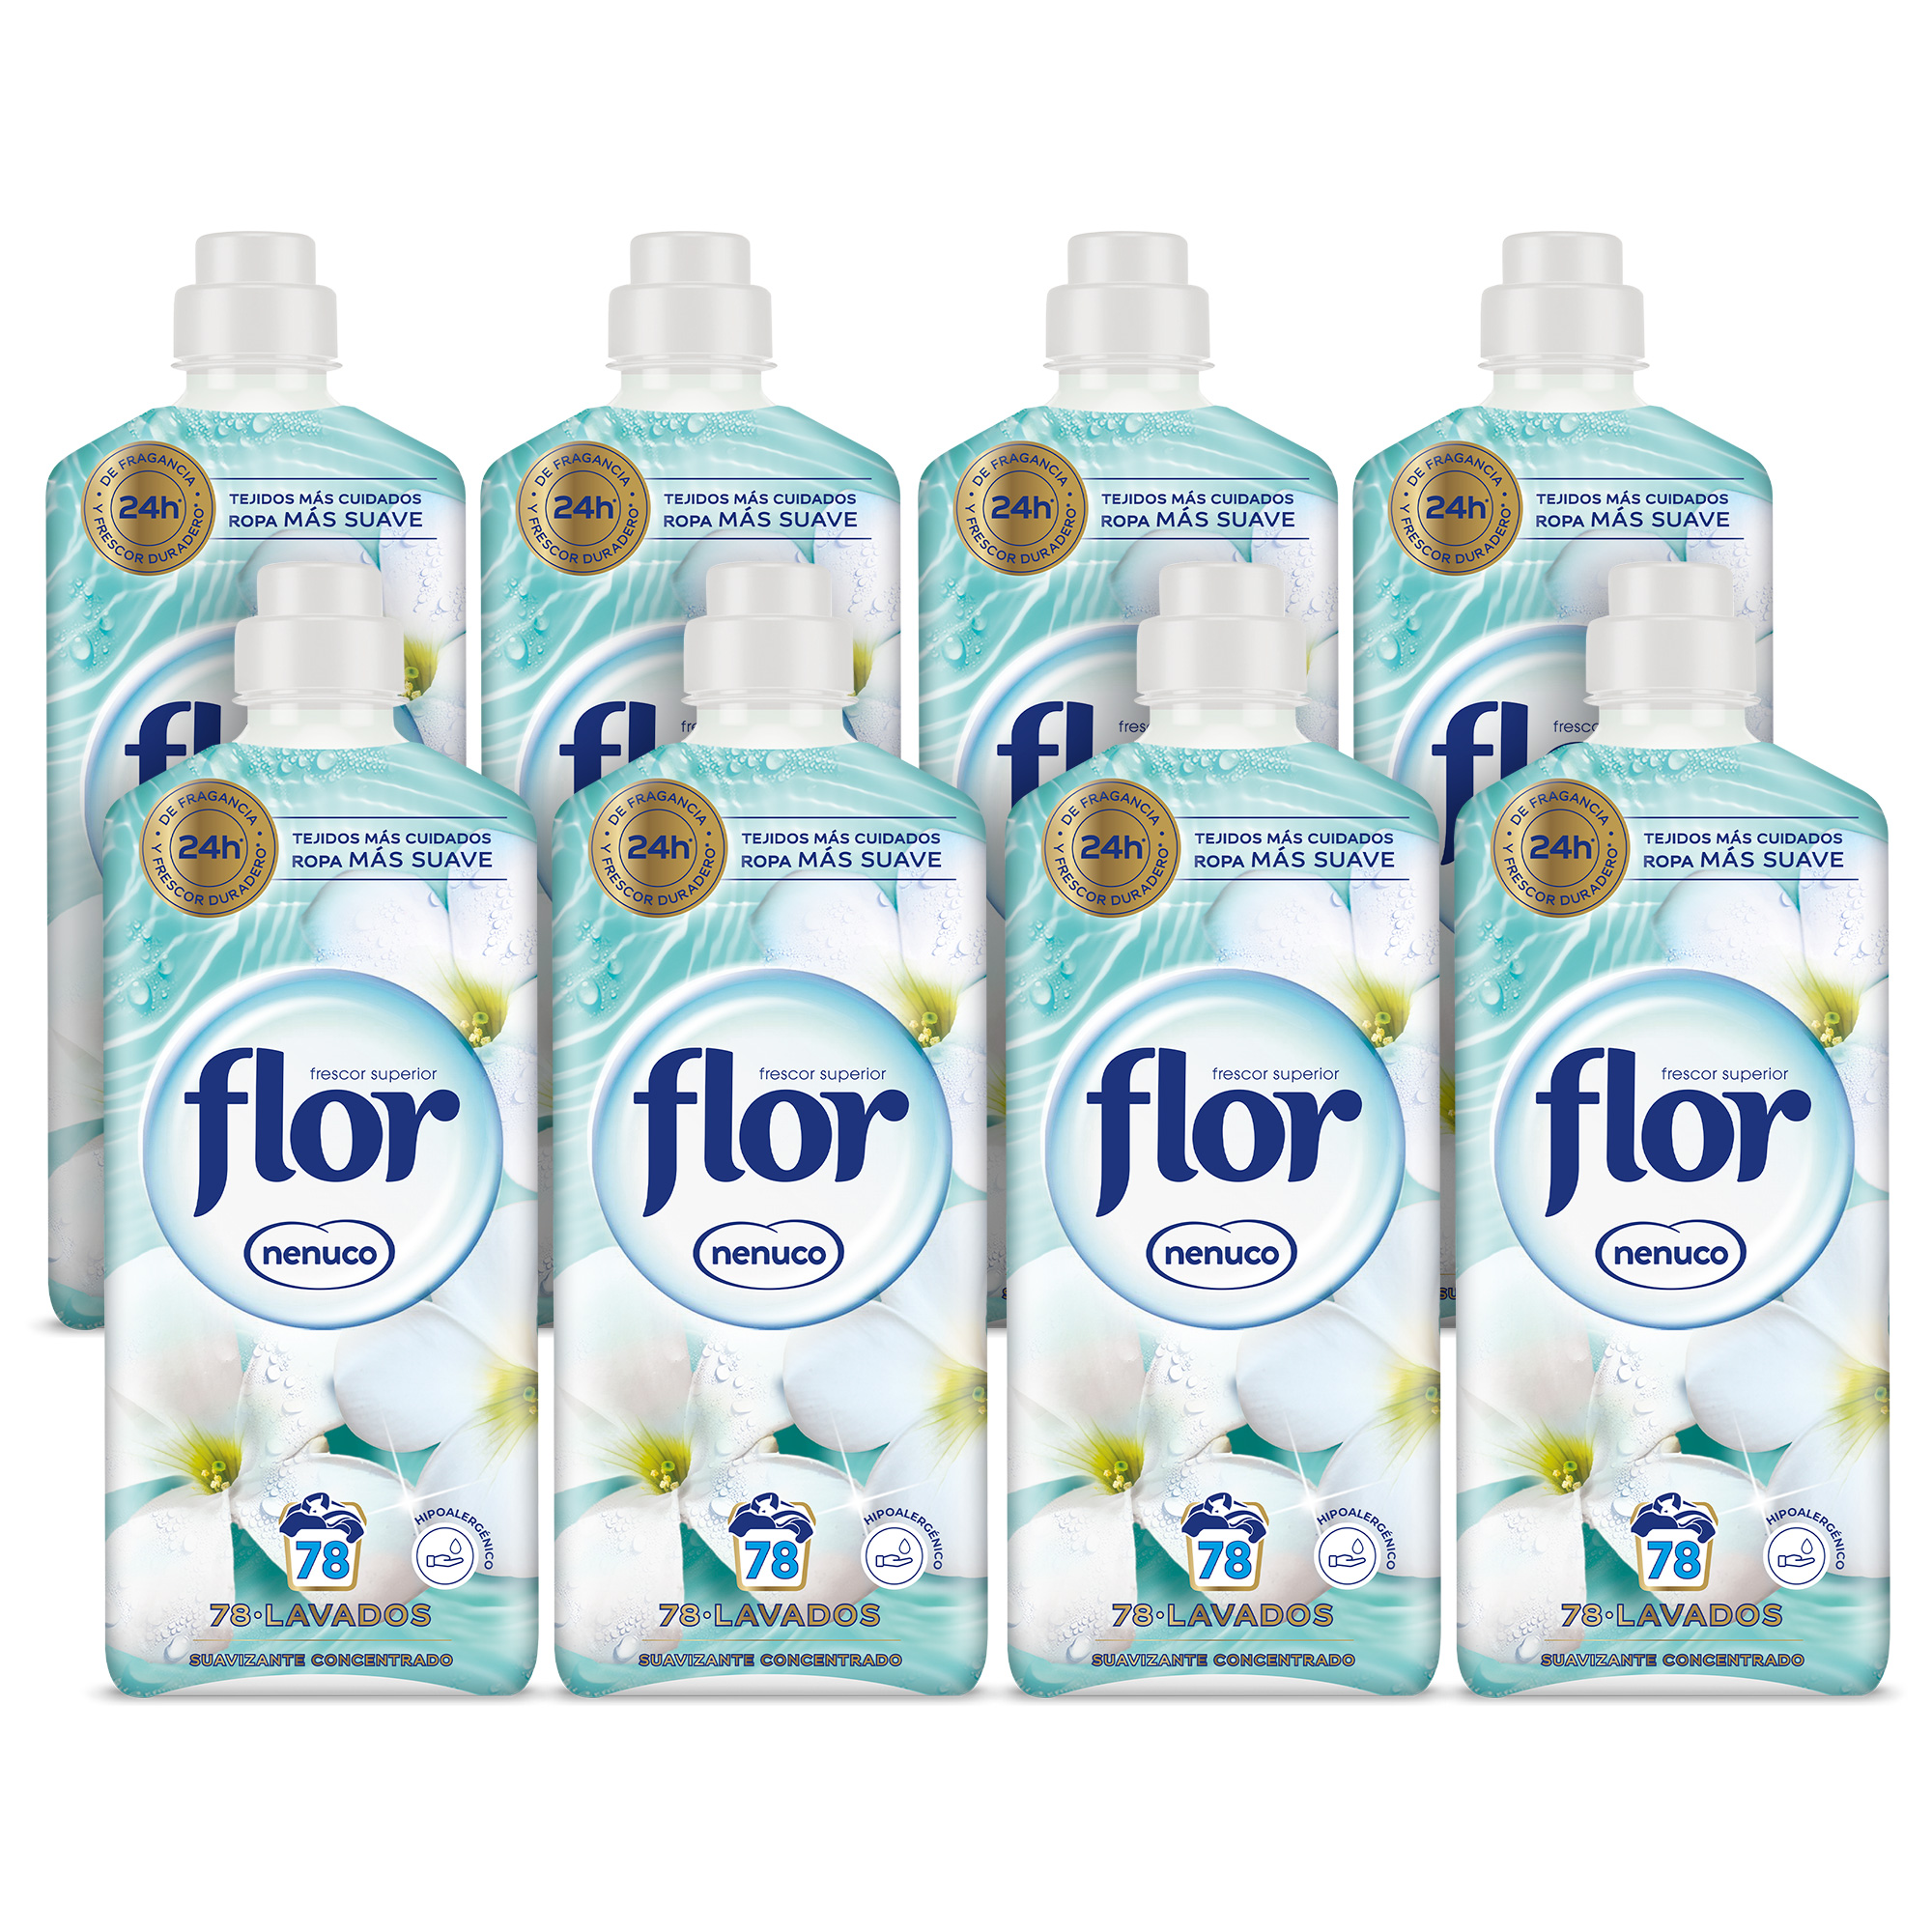 Flor - Flor Nenuco Suavizante Concentrado para la ropa 624 lavados (8 botellas de 78 lavados)